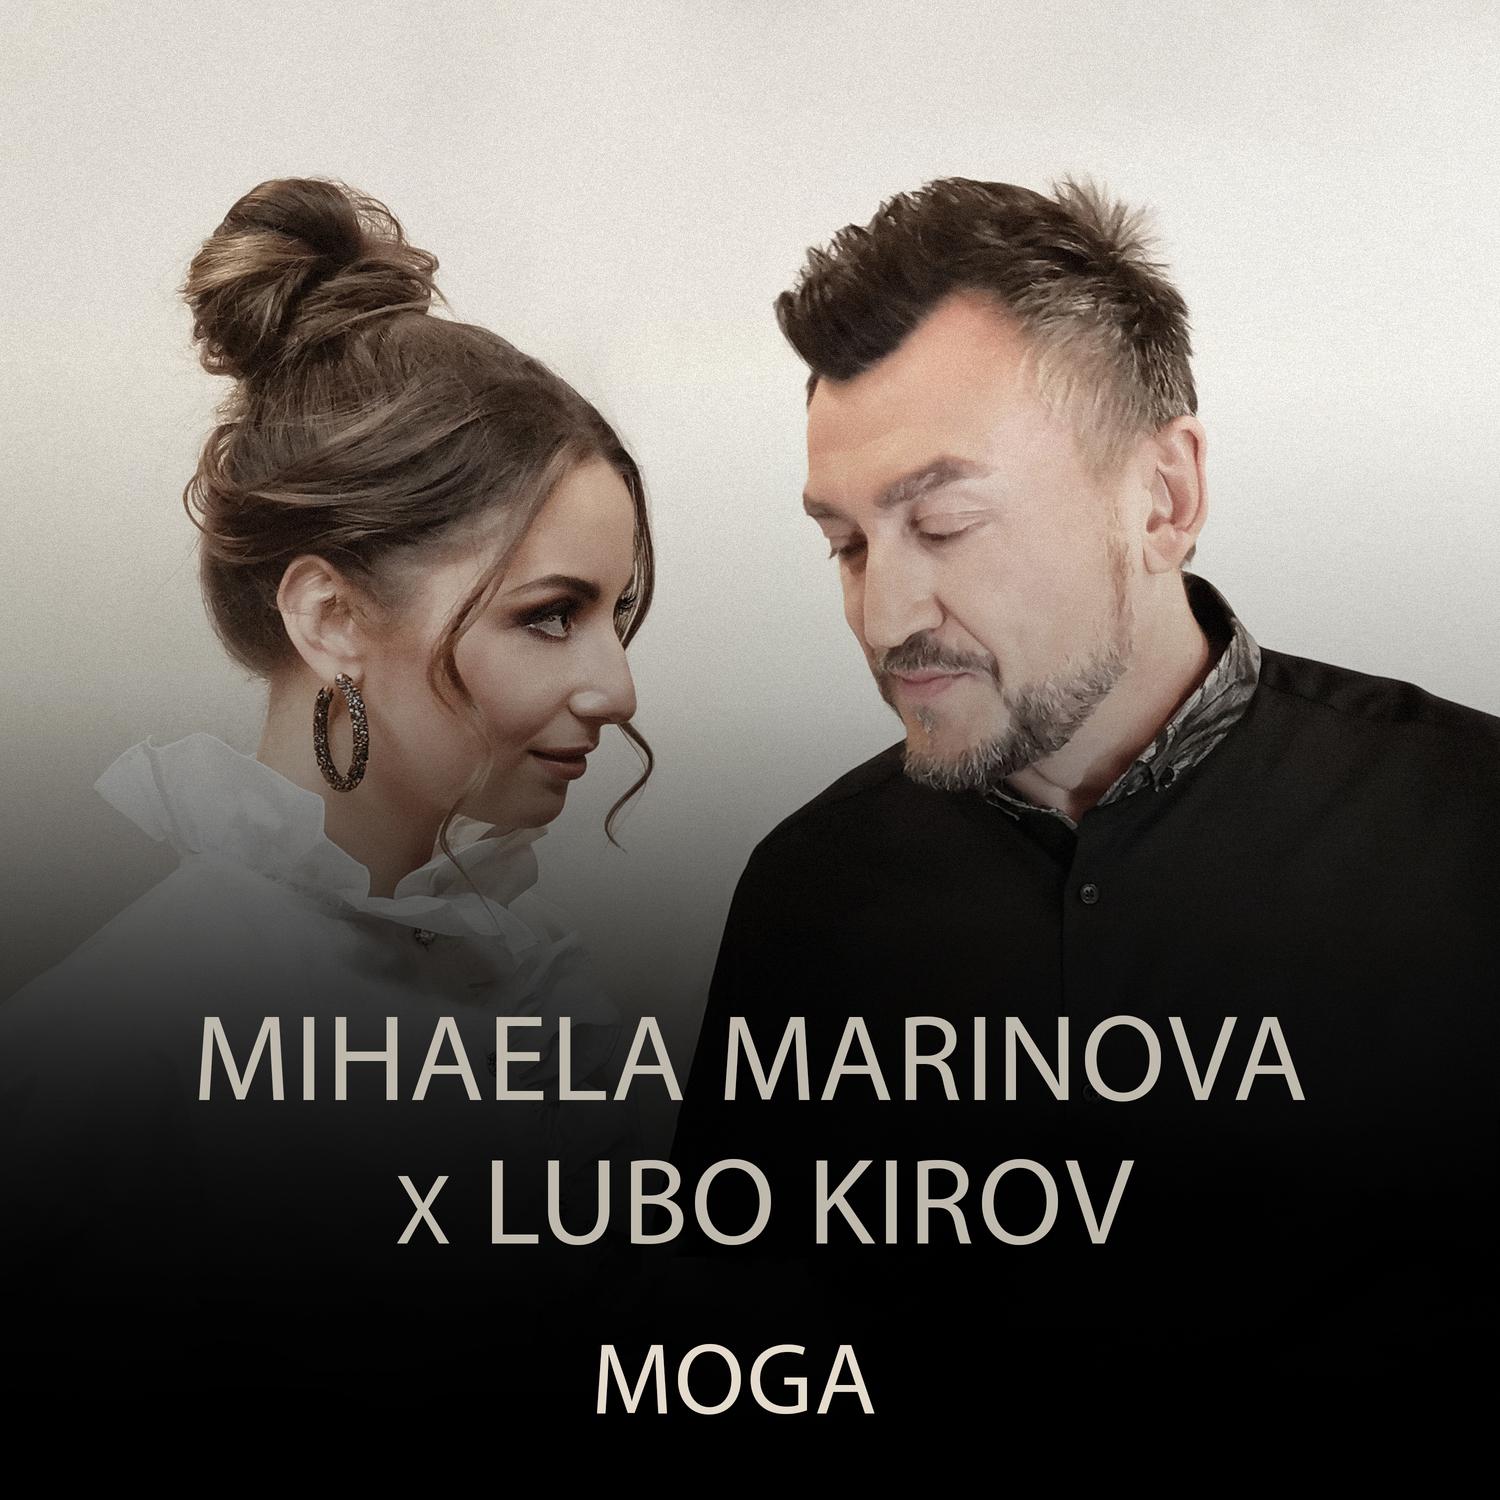 Mihaela Marinova - Moga